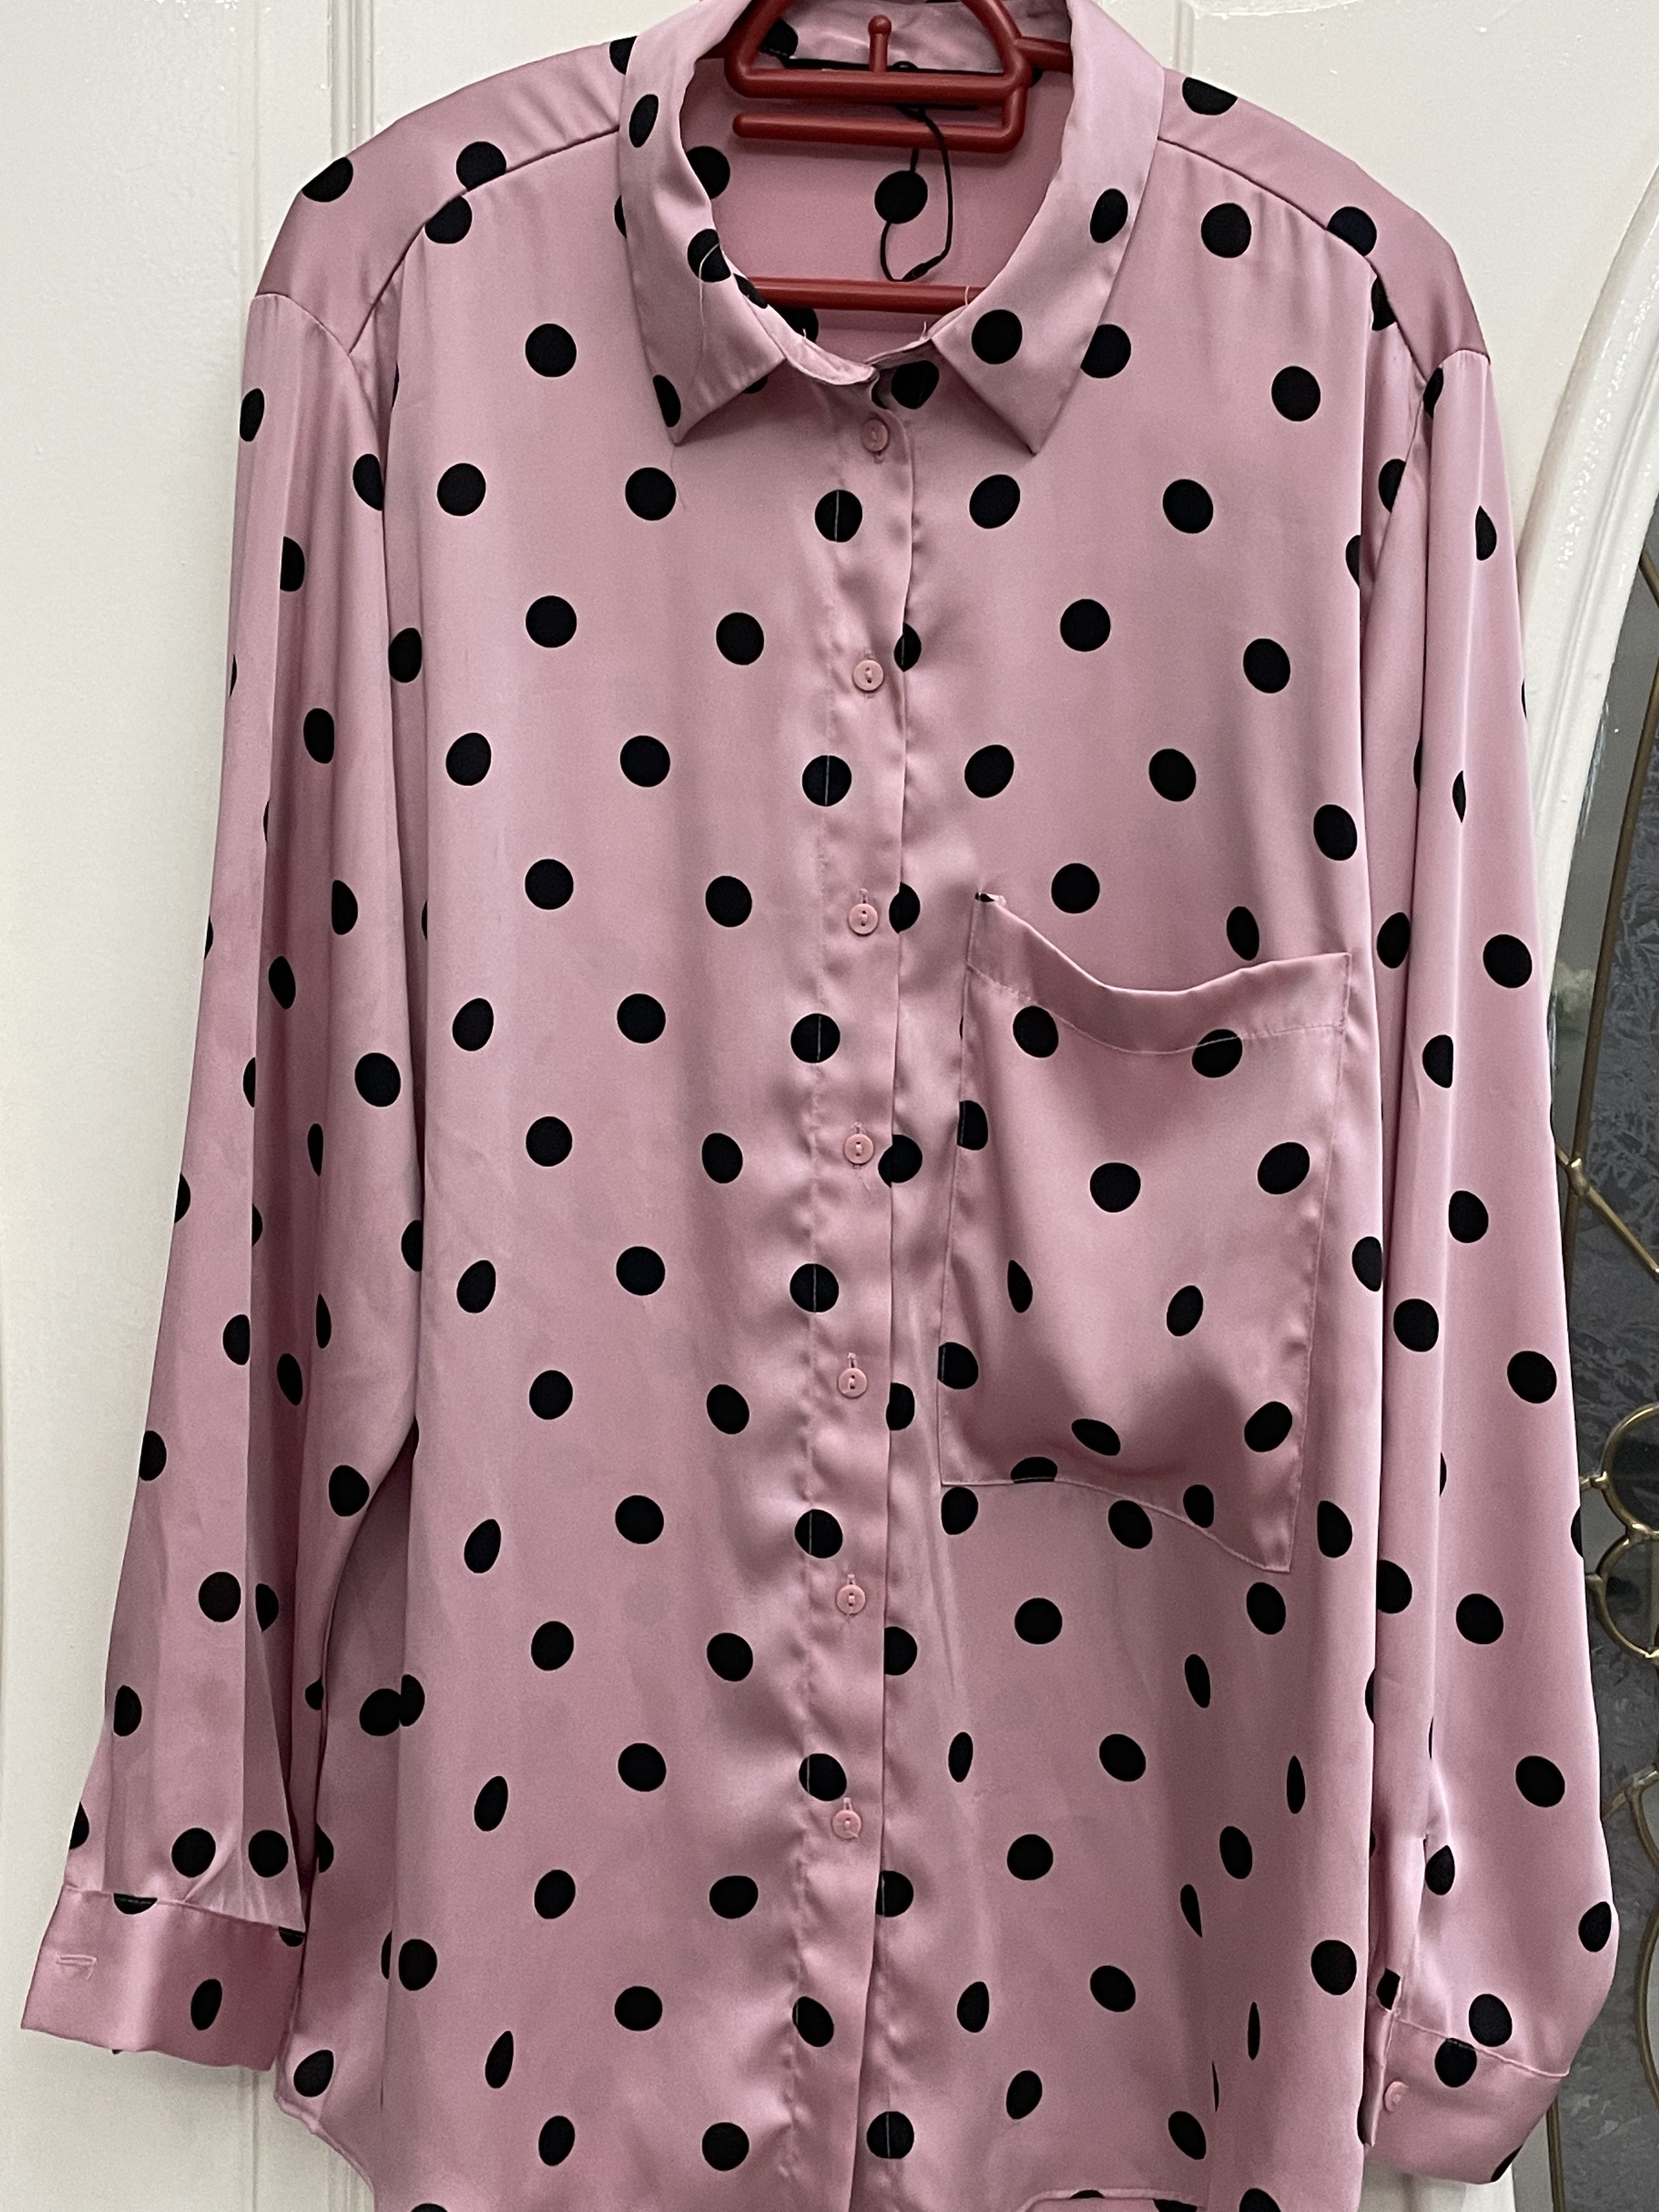 Zara, Tops, Pink And Black Polka Dot Blouse